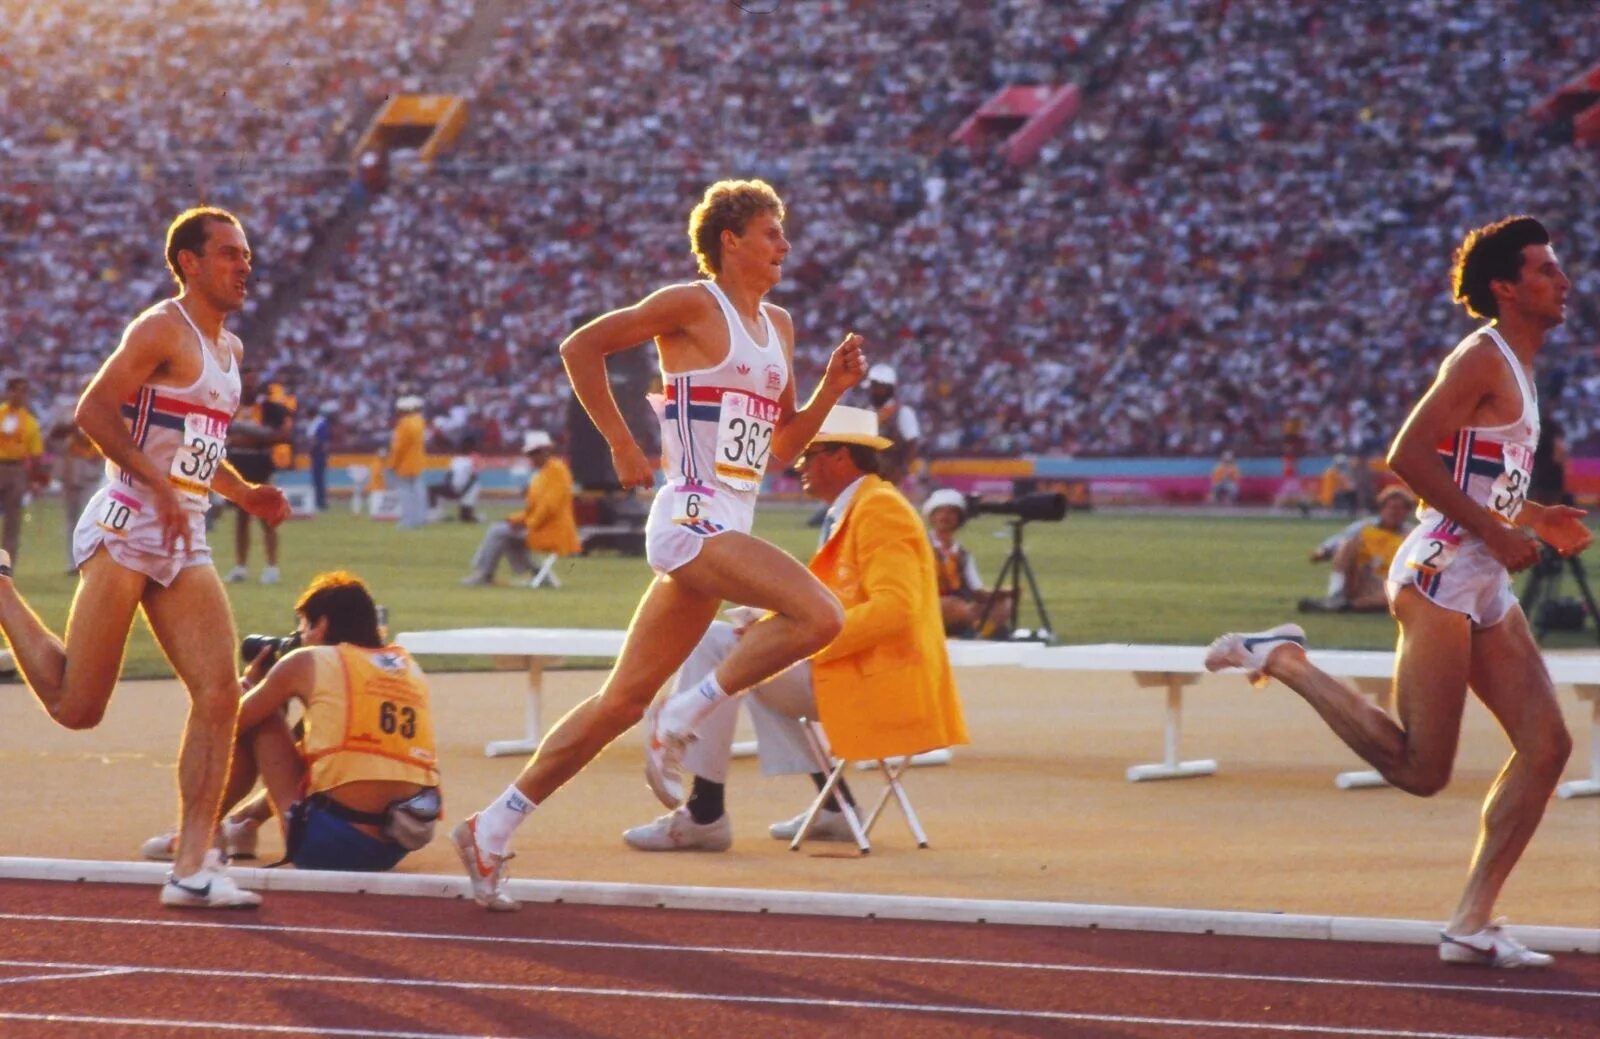 21 бегун. Sebastian Coe 1984. Бег на средние дистанции. Средние дистанции в легкой атлетике. Бегун на средние дистанции.